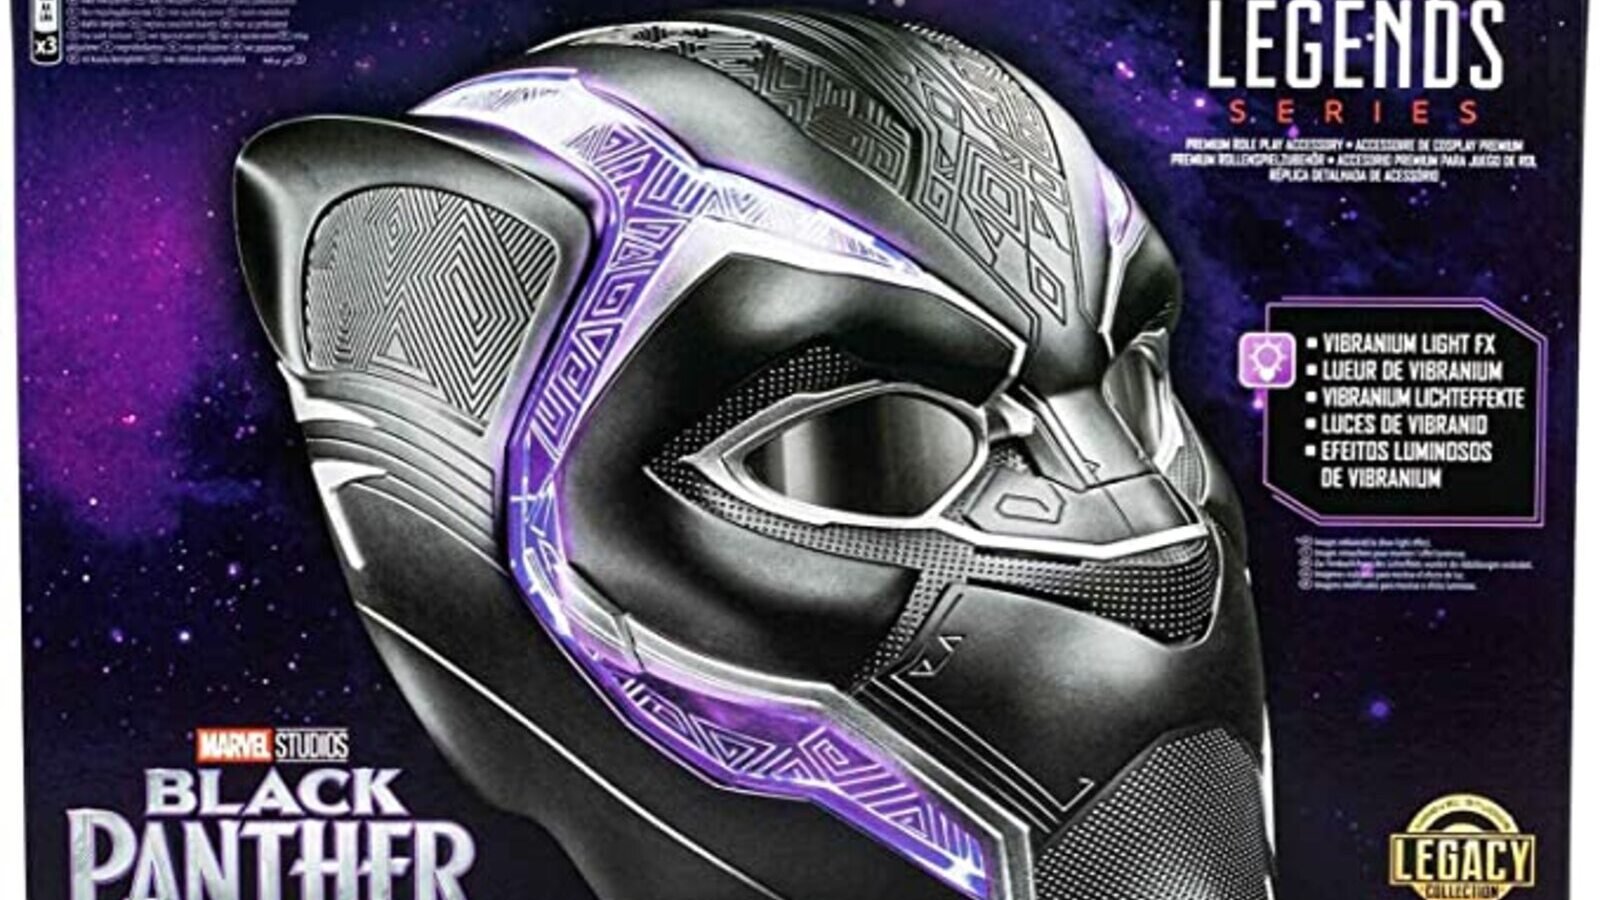 Marvel, l’iconico casco di Black Panther con effetti luminosi e lenti mobili, è in sconto su Amazon